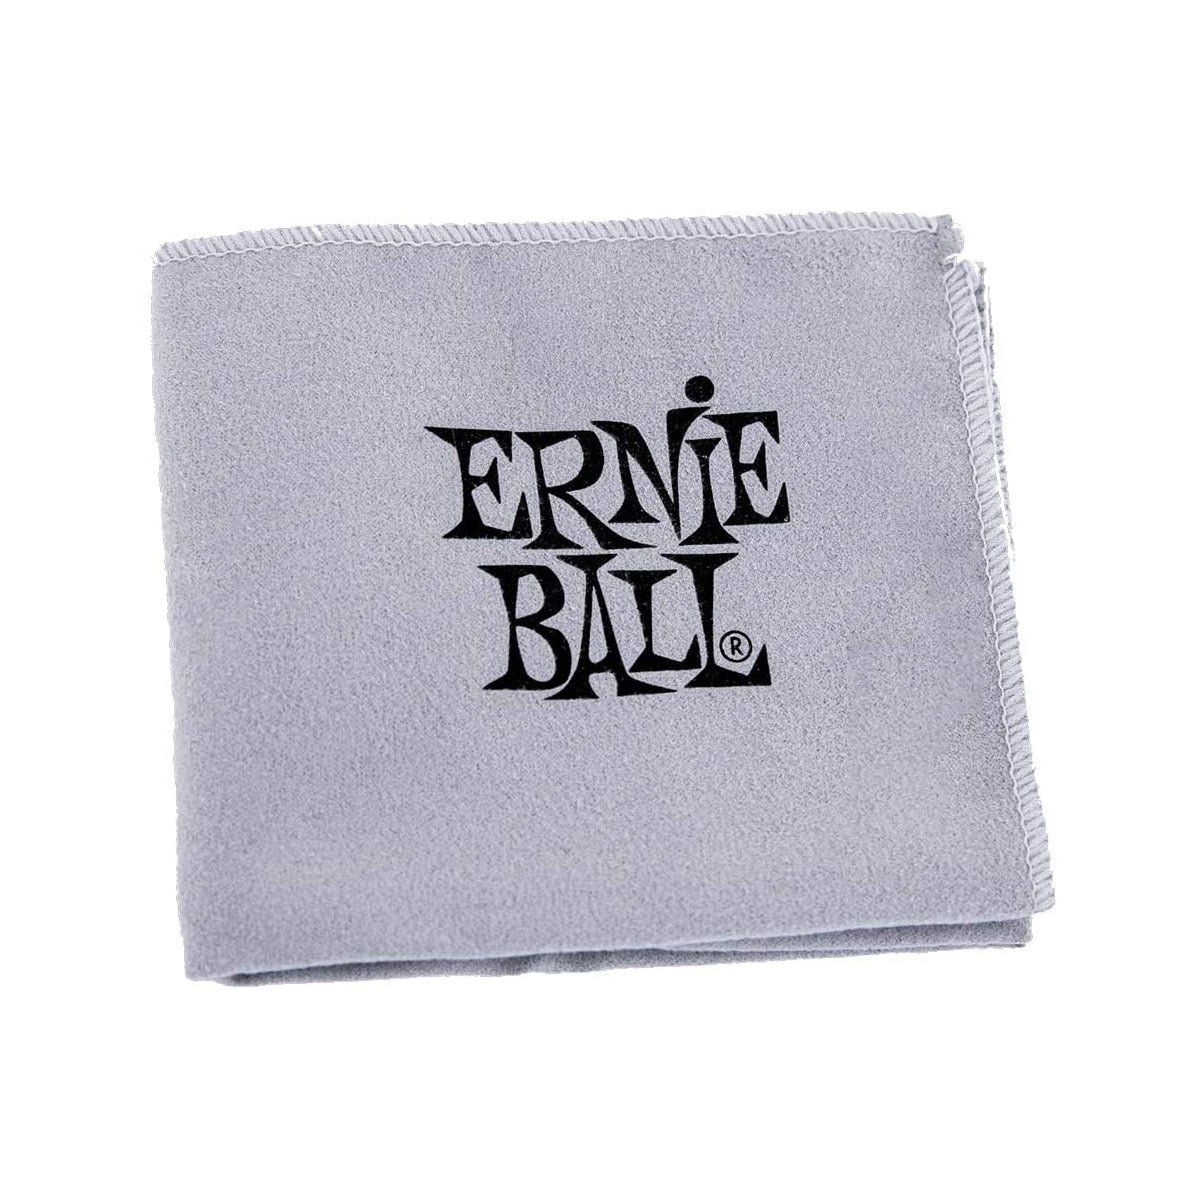 Ernie Ball Guitar Polish Cloth